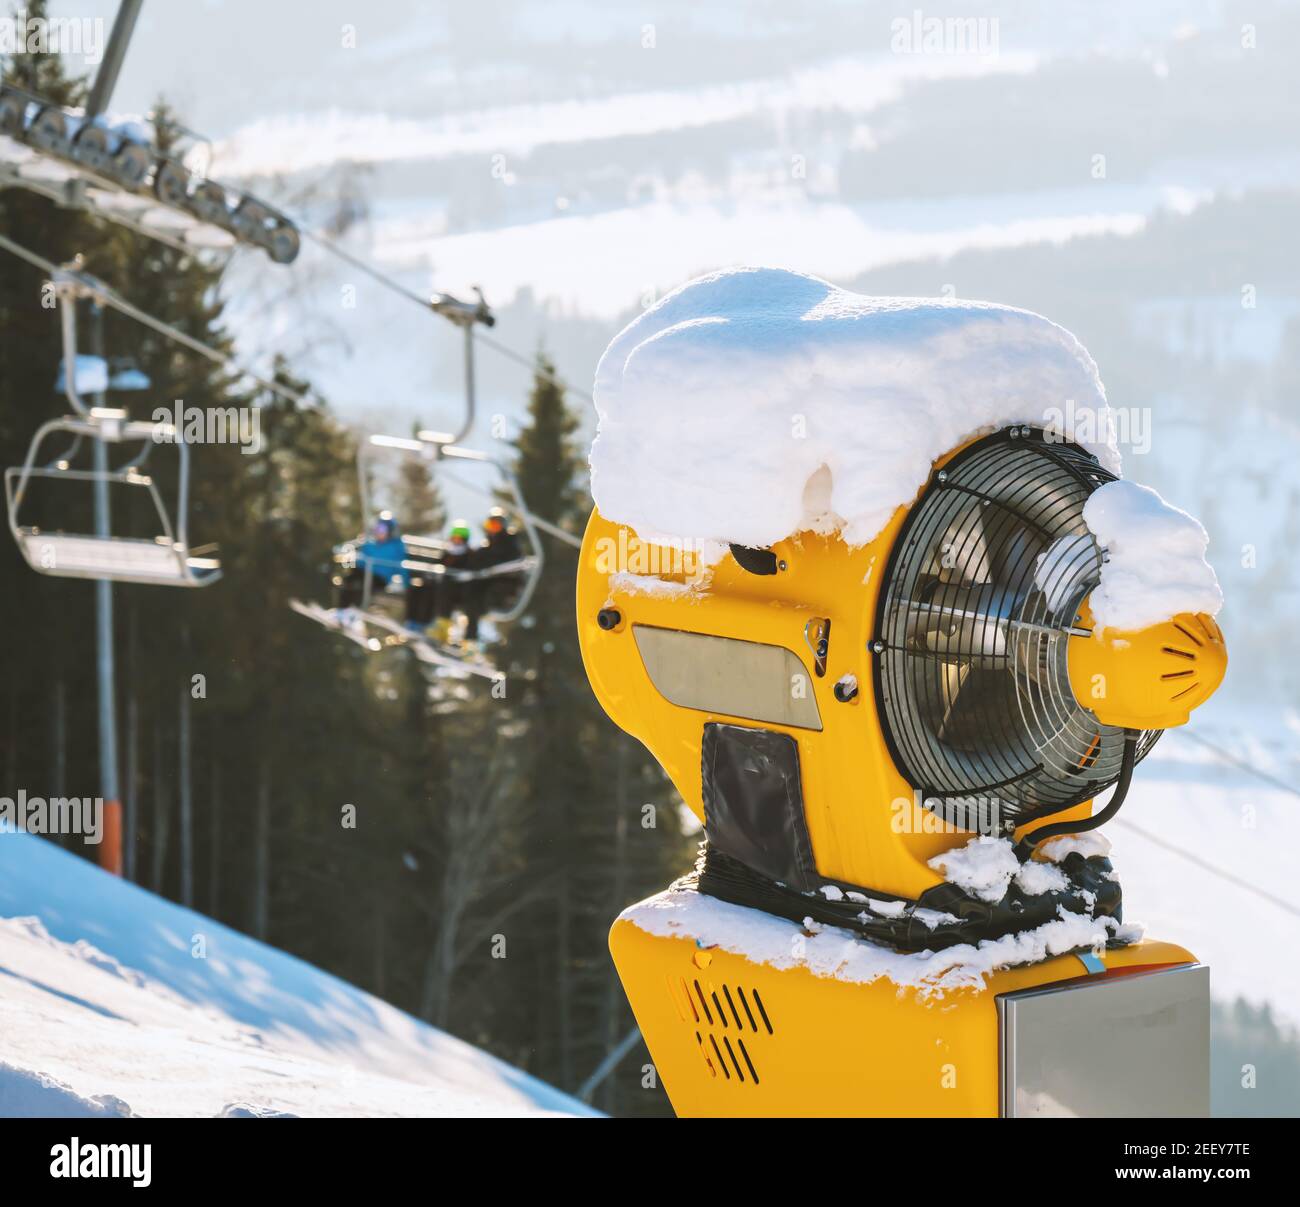 An einem sonnigen Wintertag wird in einem Skigebiet eine Maschine für die Beschneiung gemacht. Stockfoto